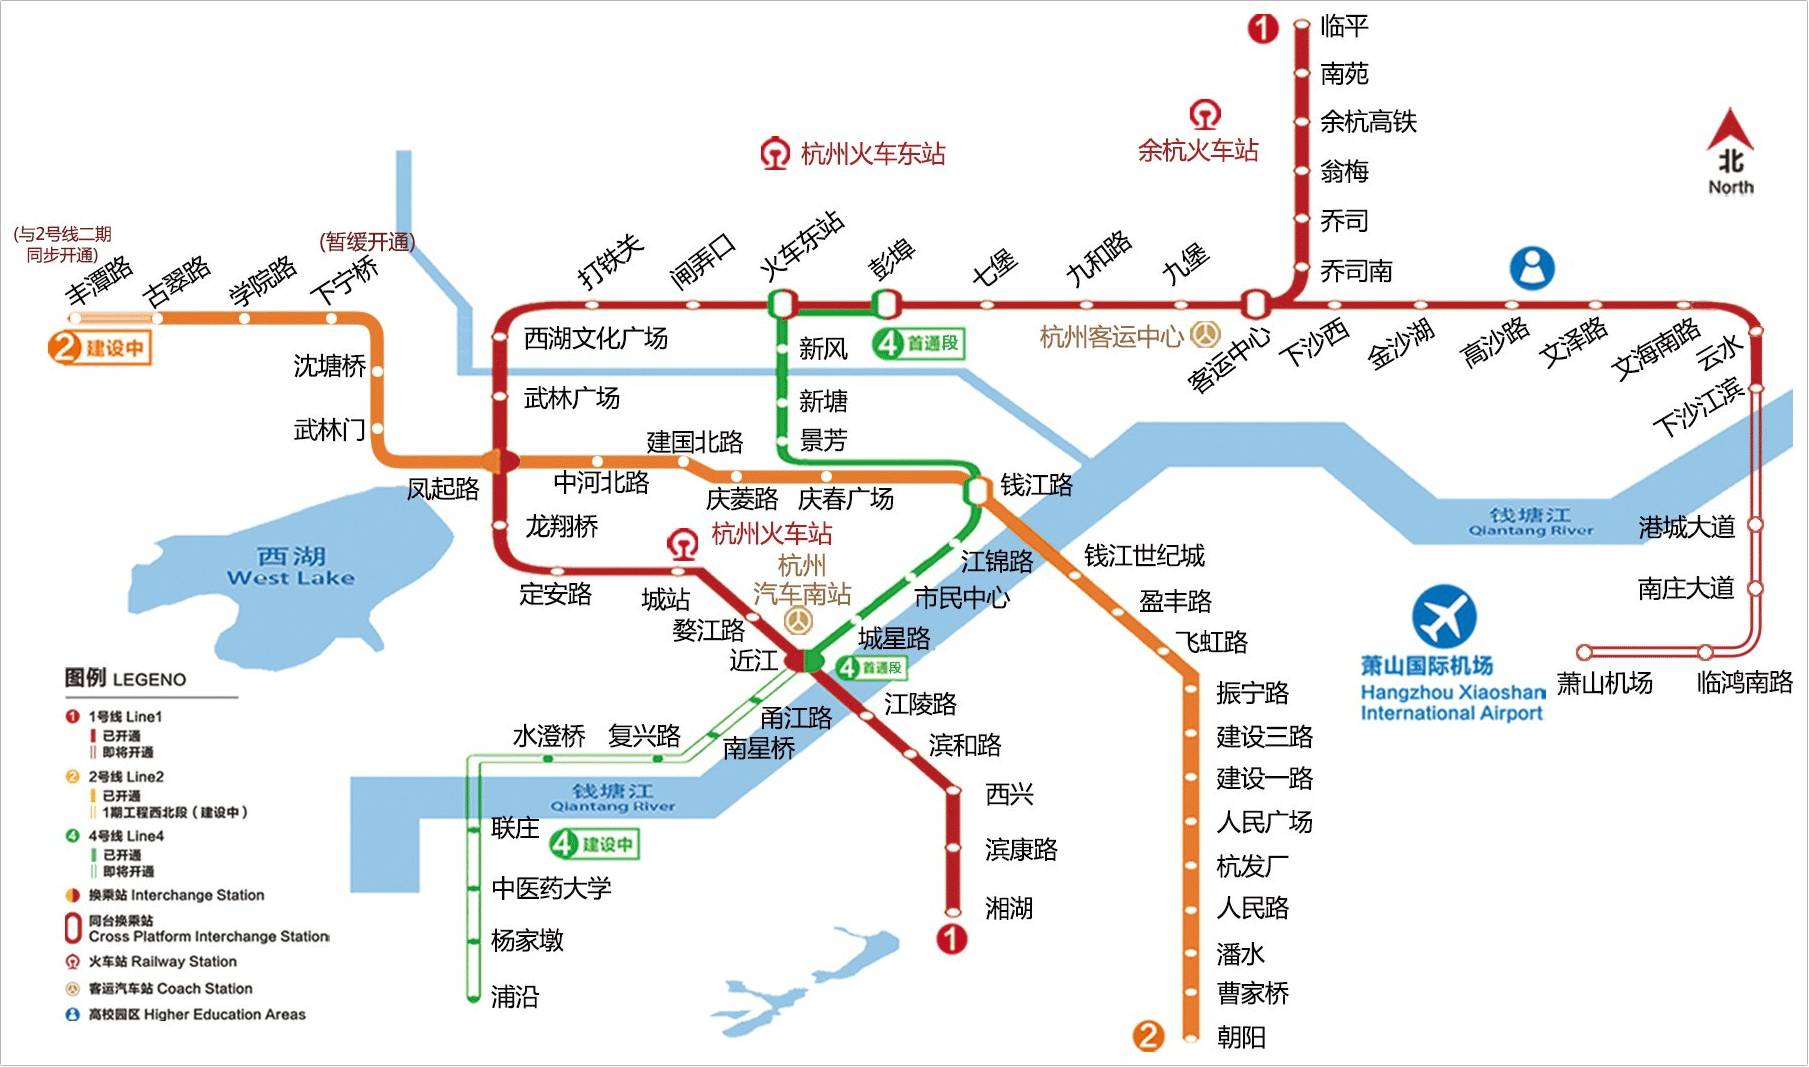 定了!地铁2号线西北段后天开通,萧山直达杭州中心